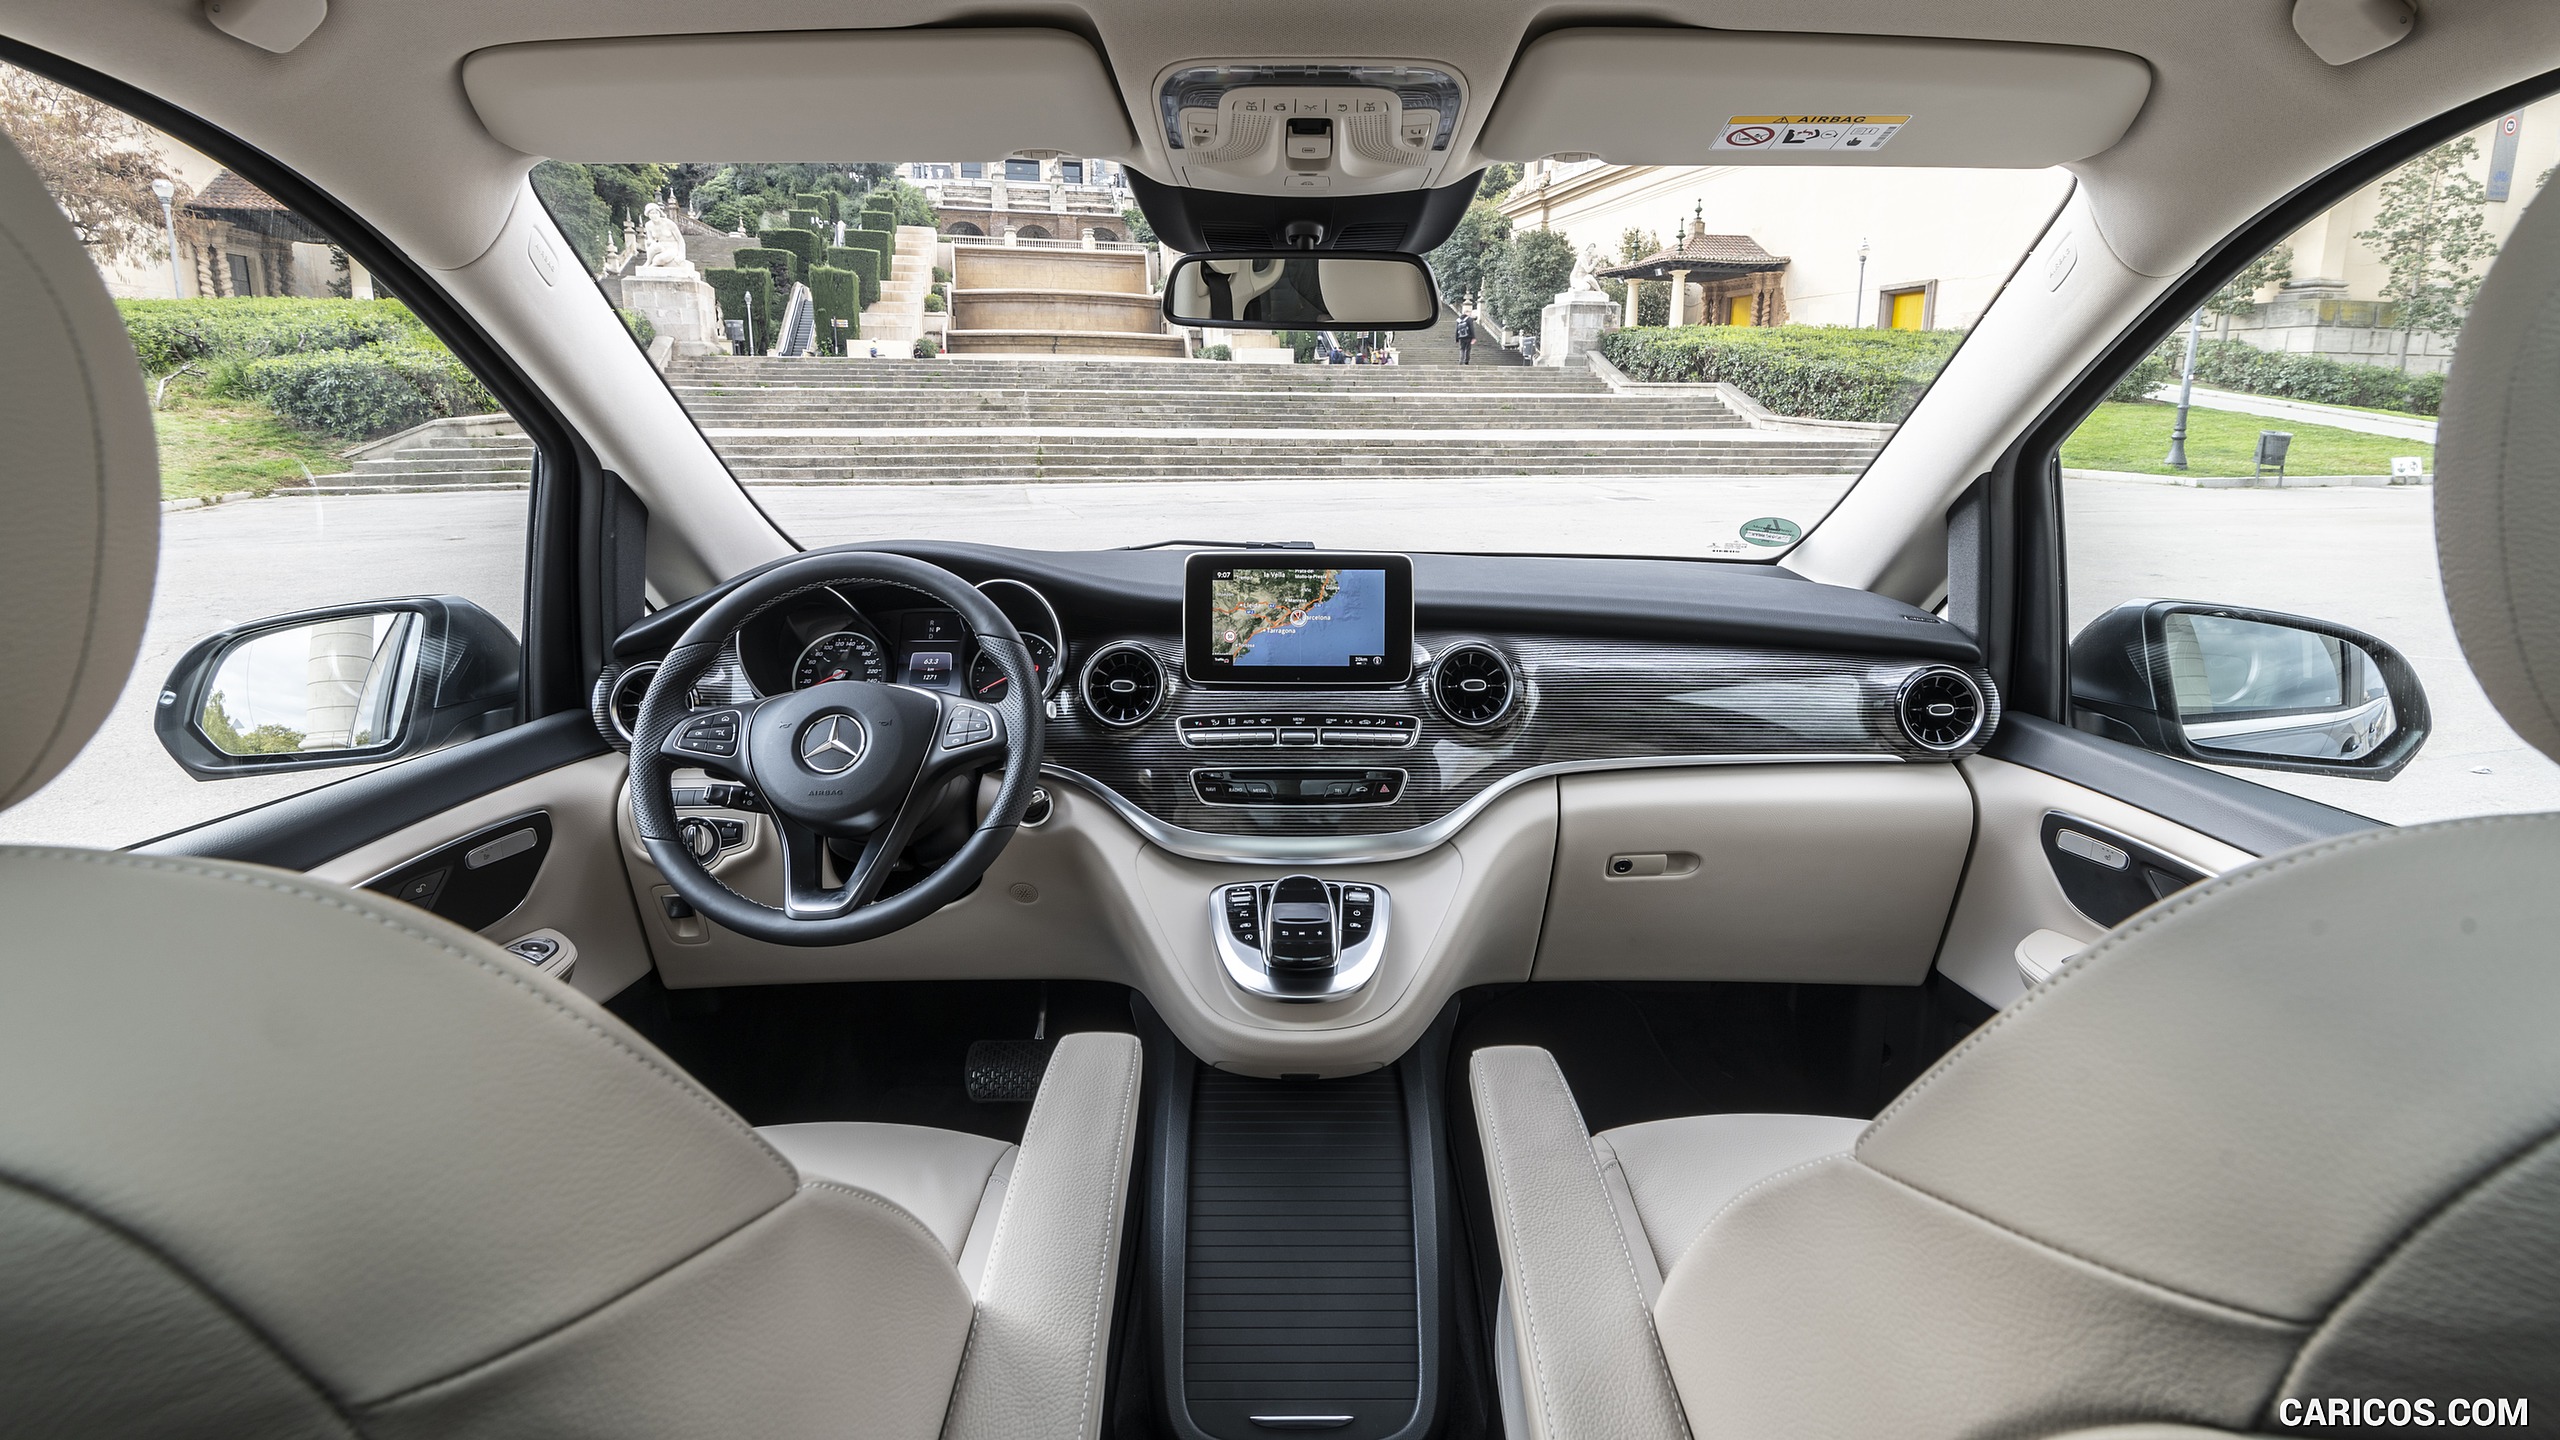 2019 Mercedes-Benz V-Class V300d AVANTGARDE - Interior, Cockpit, #112 of 216